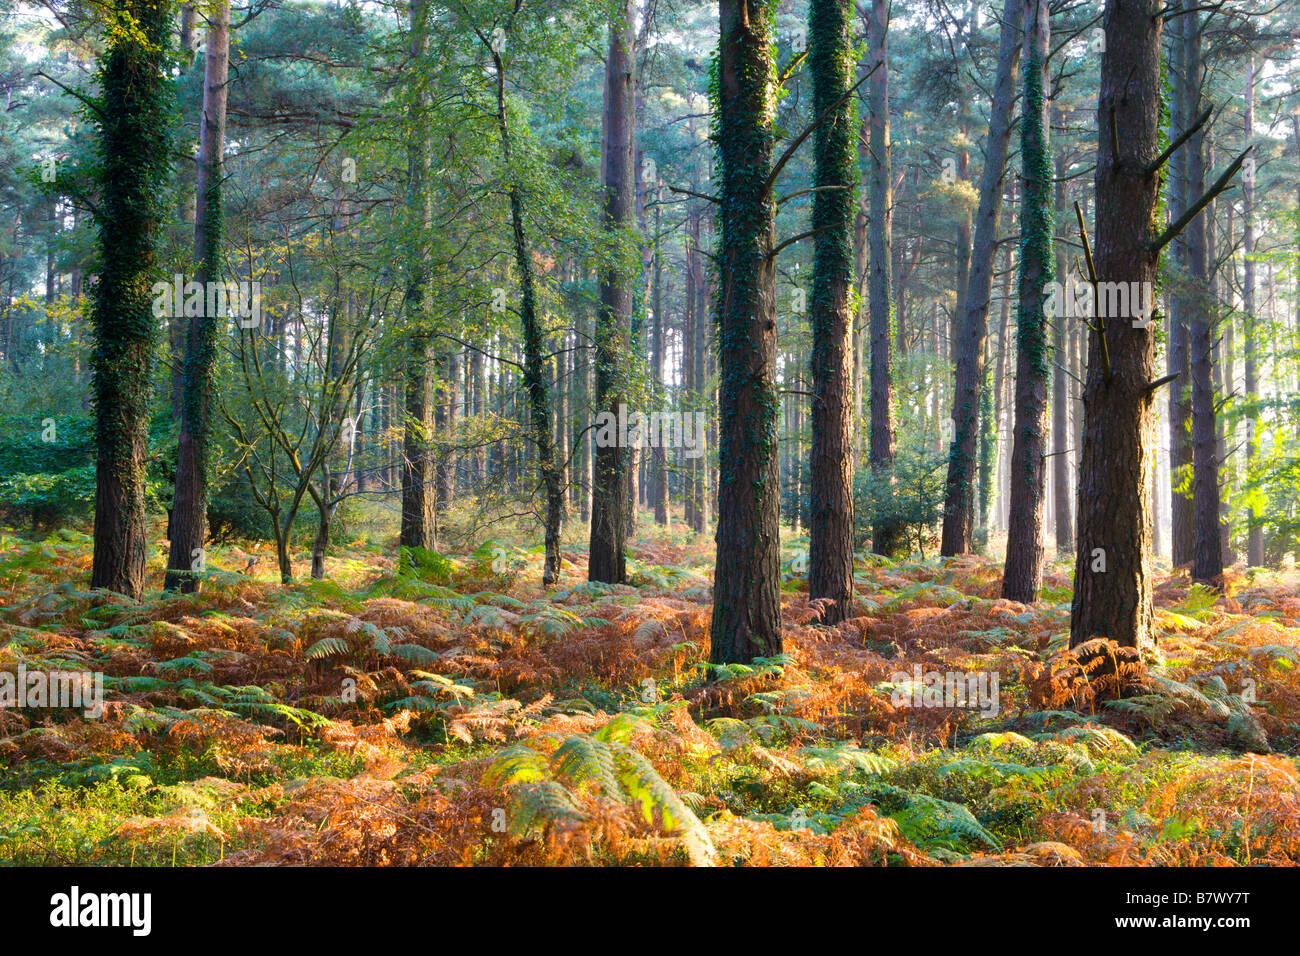 Couleurs d'automne dans le Parc National d'Exmoor Plantation Luccombe Angleterre Somerset Banque D'Images